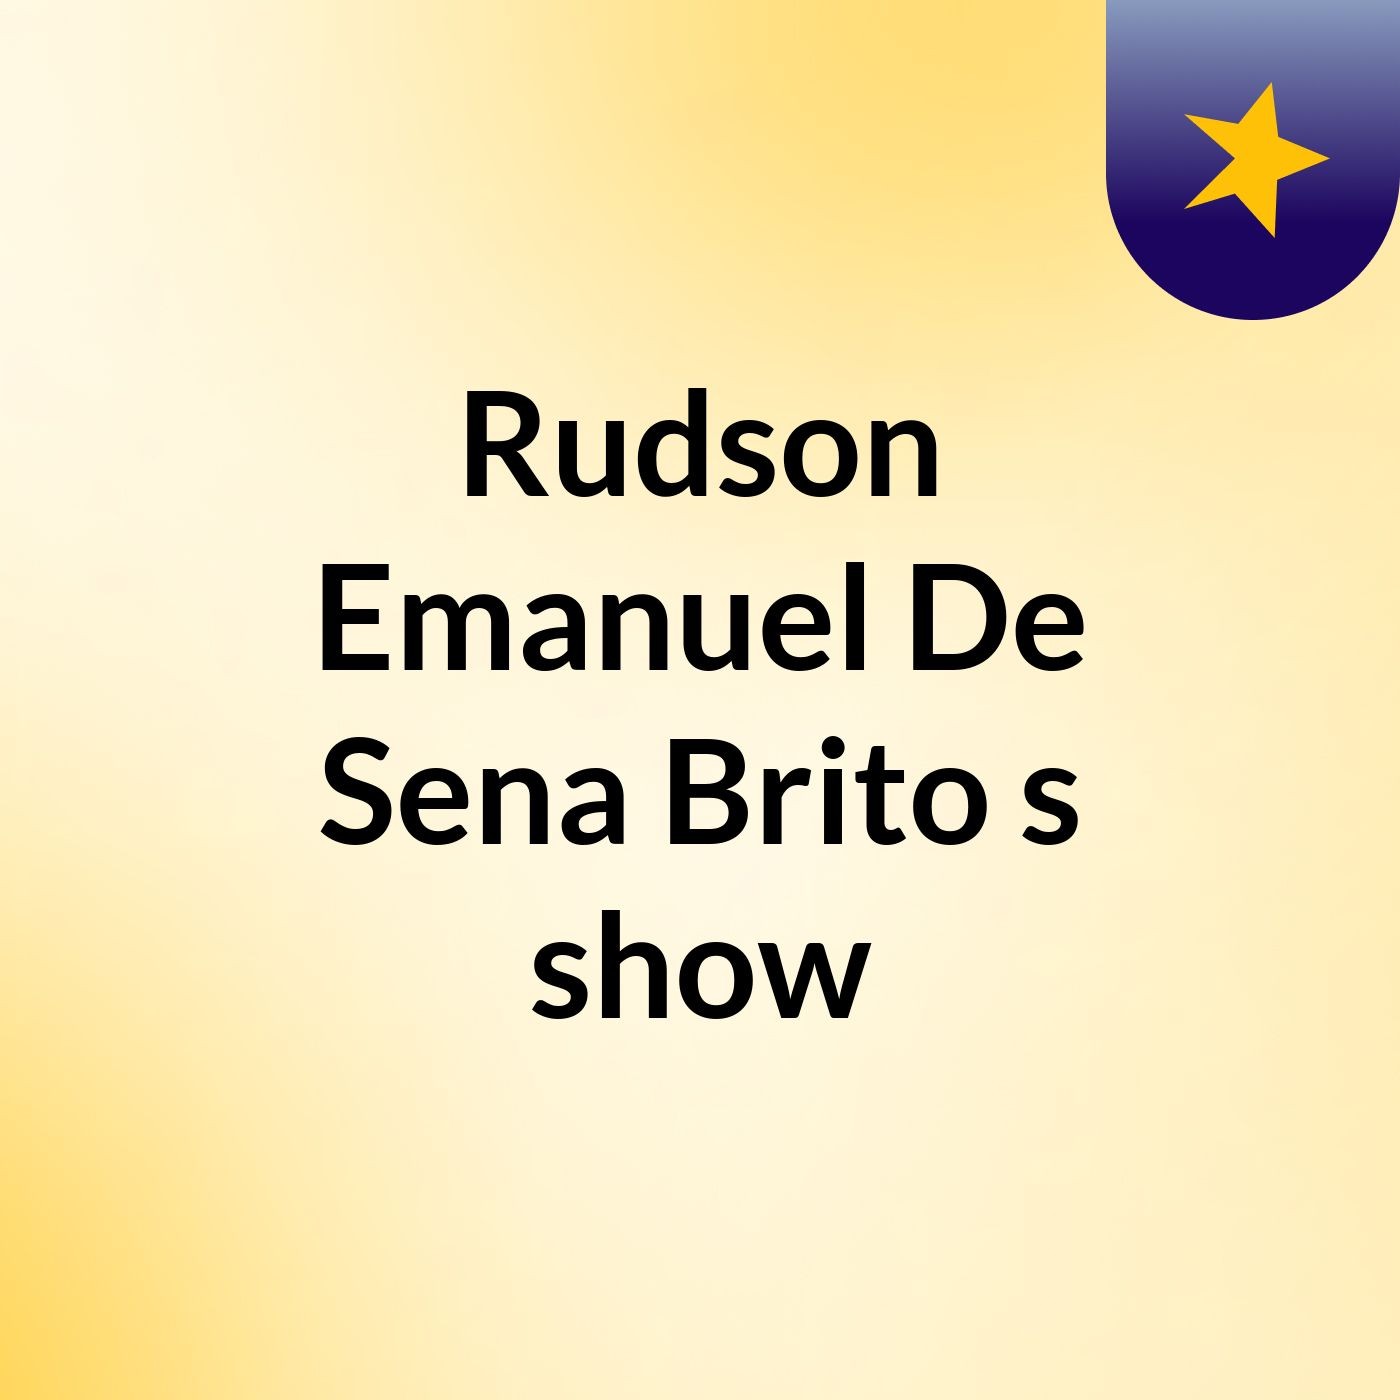 Rudson Emanuel De Sena Brito's show